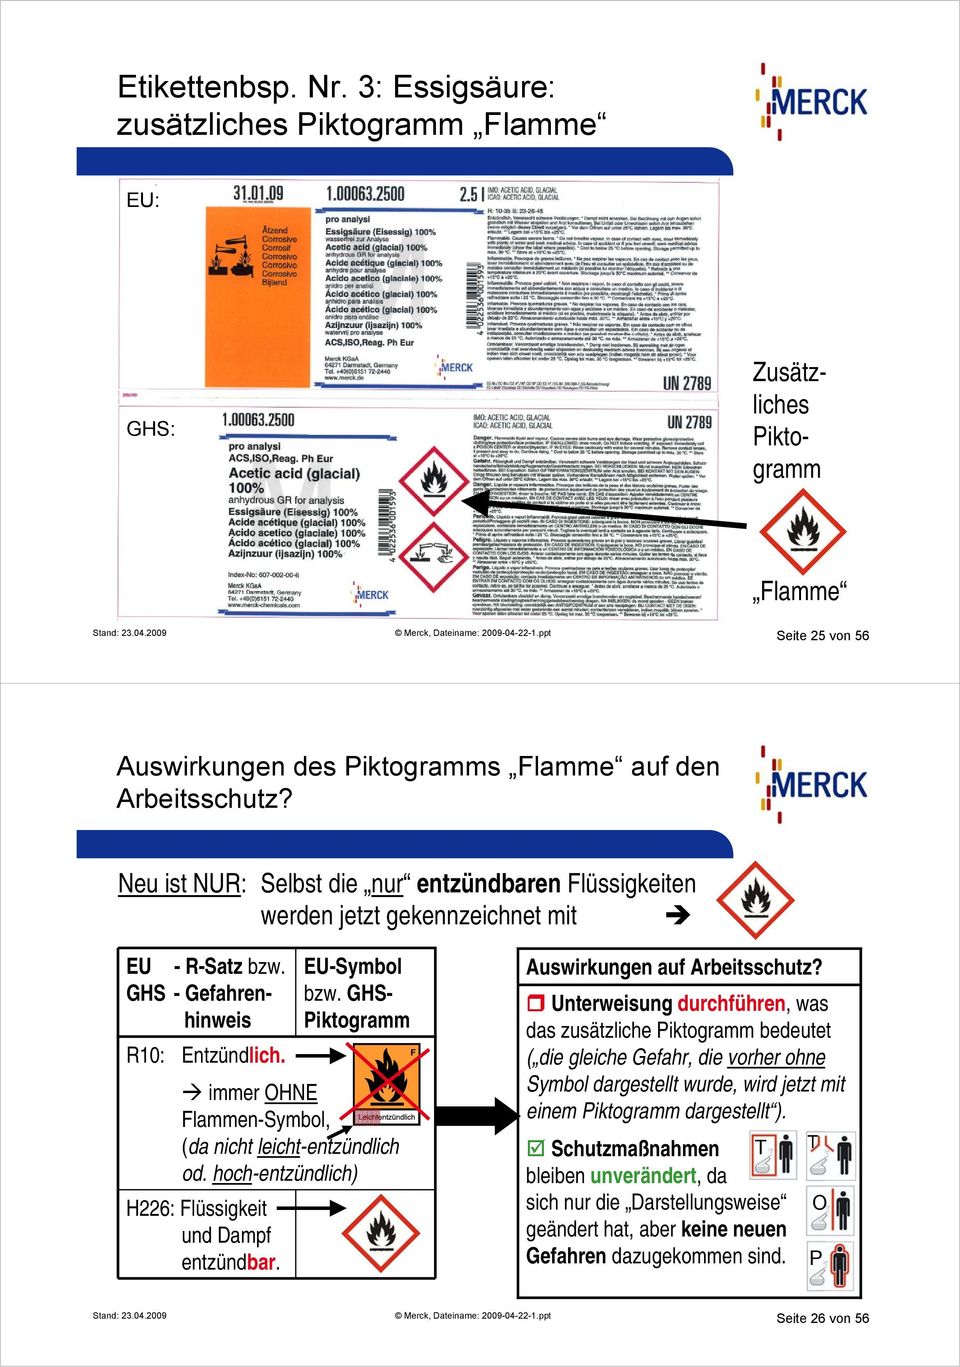 EU-Symbol bzw. GHS- immer OHNE Flammen-Symbol, (da nicht leicht-entzündlich od. hoch-entzündlich) Auswirkungen auf Arbeitsschutz?